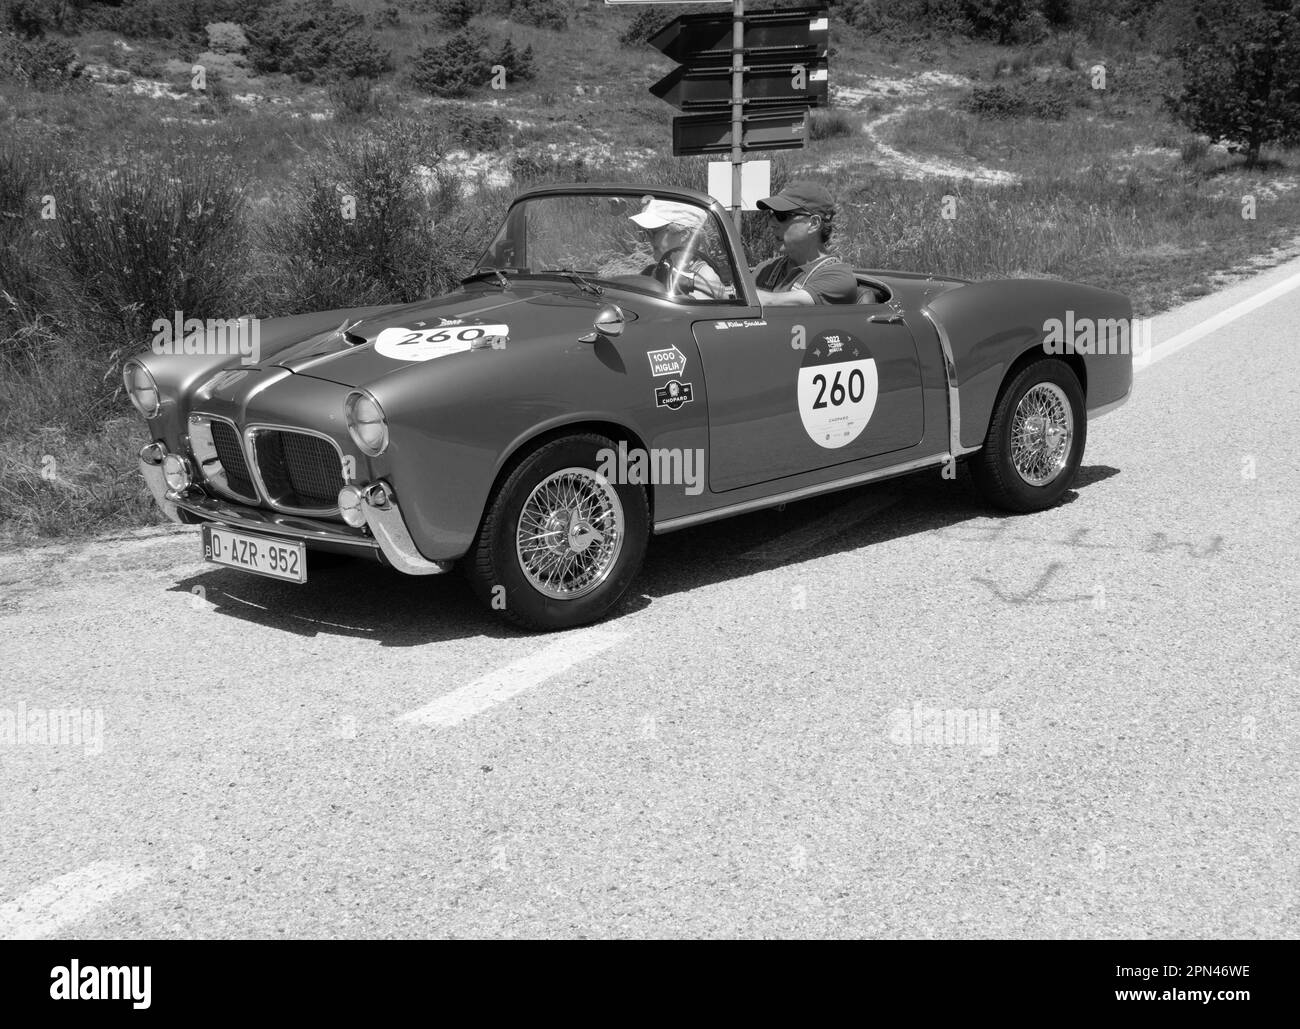 URBINO, ITALIE - 16 JUIN - 2022 : FIAT 1100 103 TV SPIDER 1955 sur une vieille voiture de course en rallye mille Miglia 2022 la célèbre course historique italienne Banque D'Images